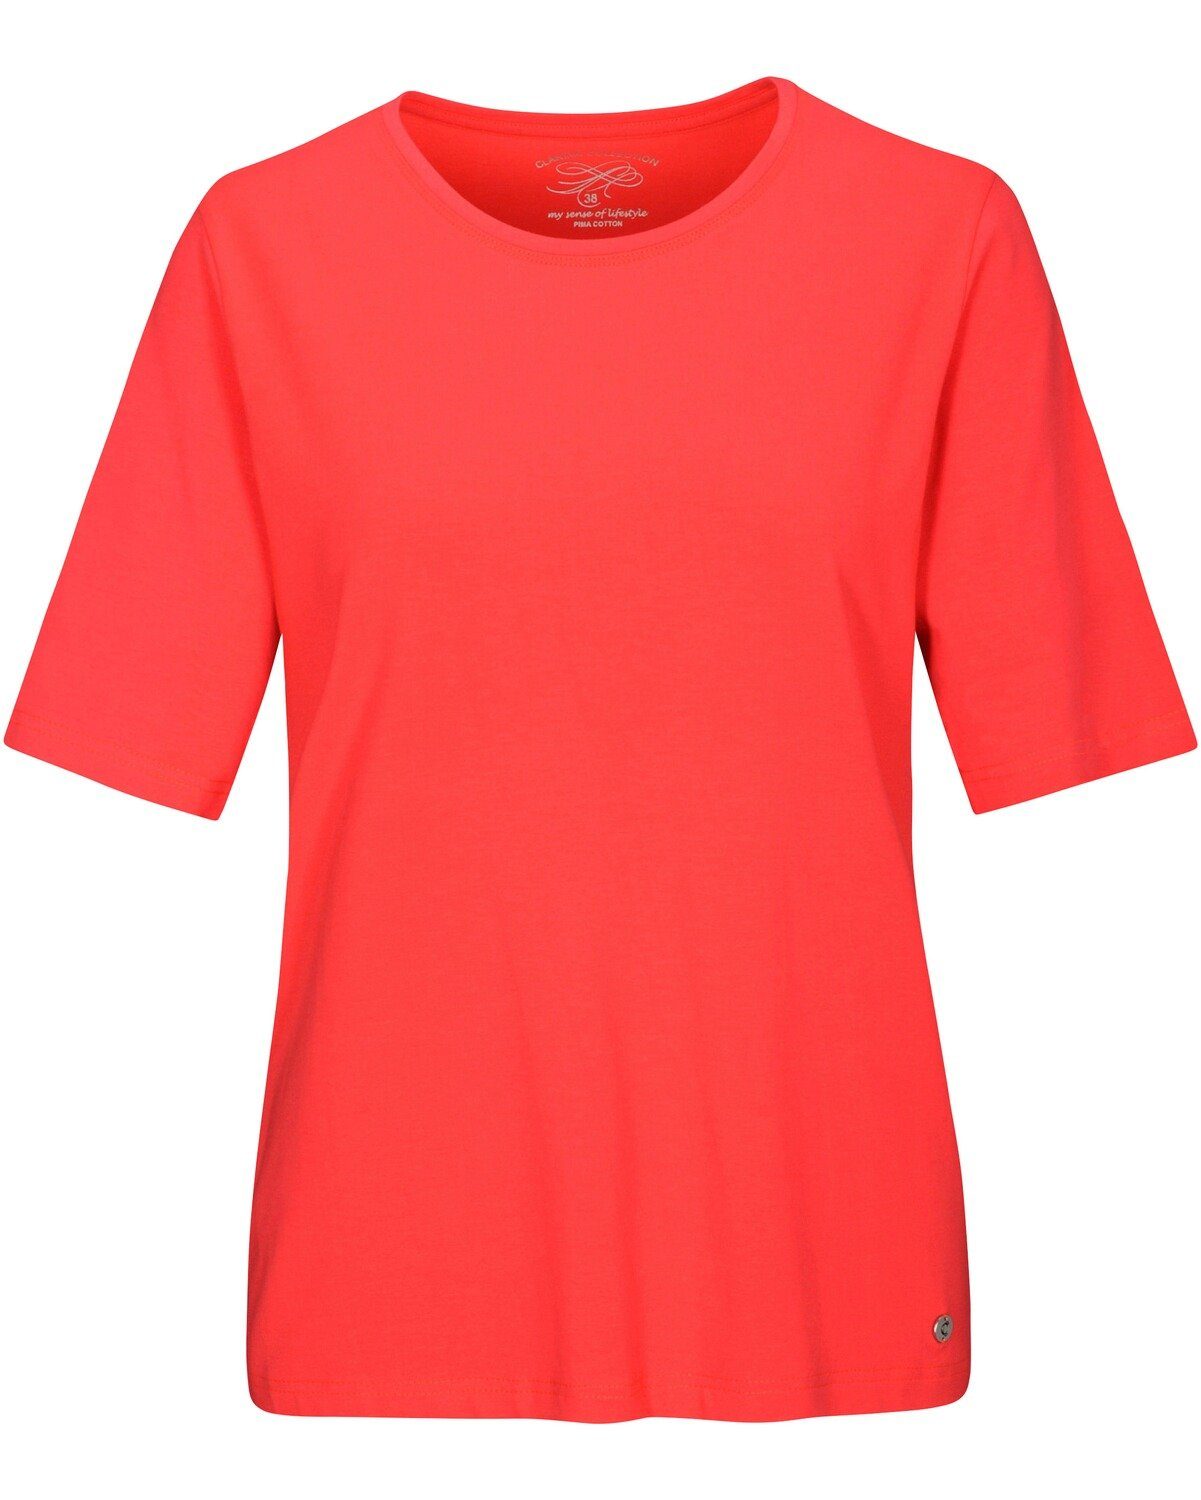 Clarina T-Shirt Halbarm-Shirt Rot